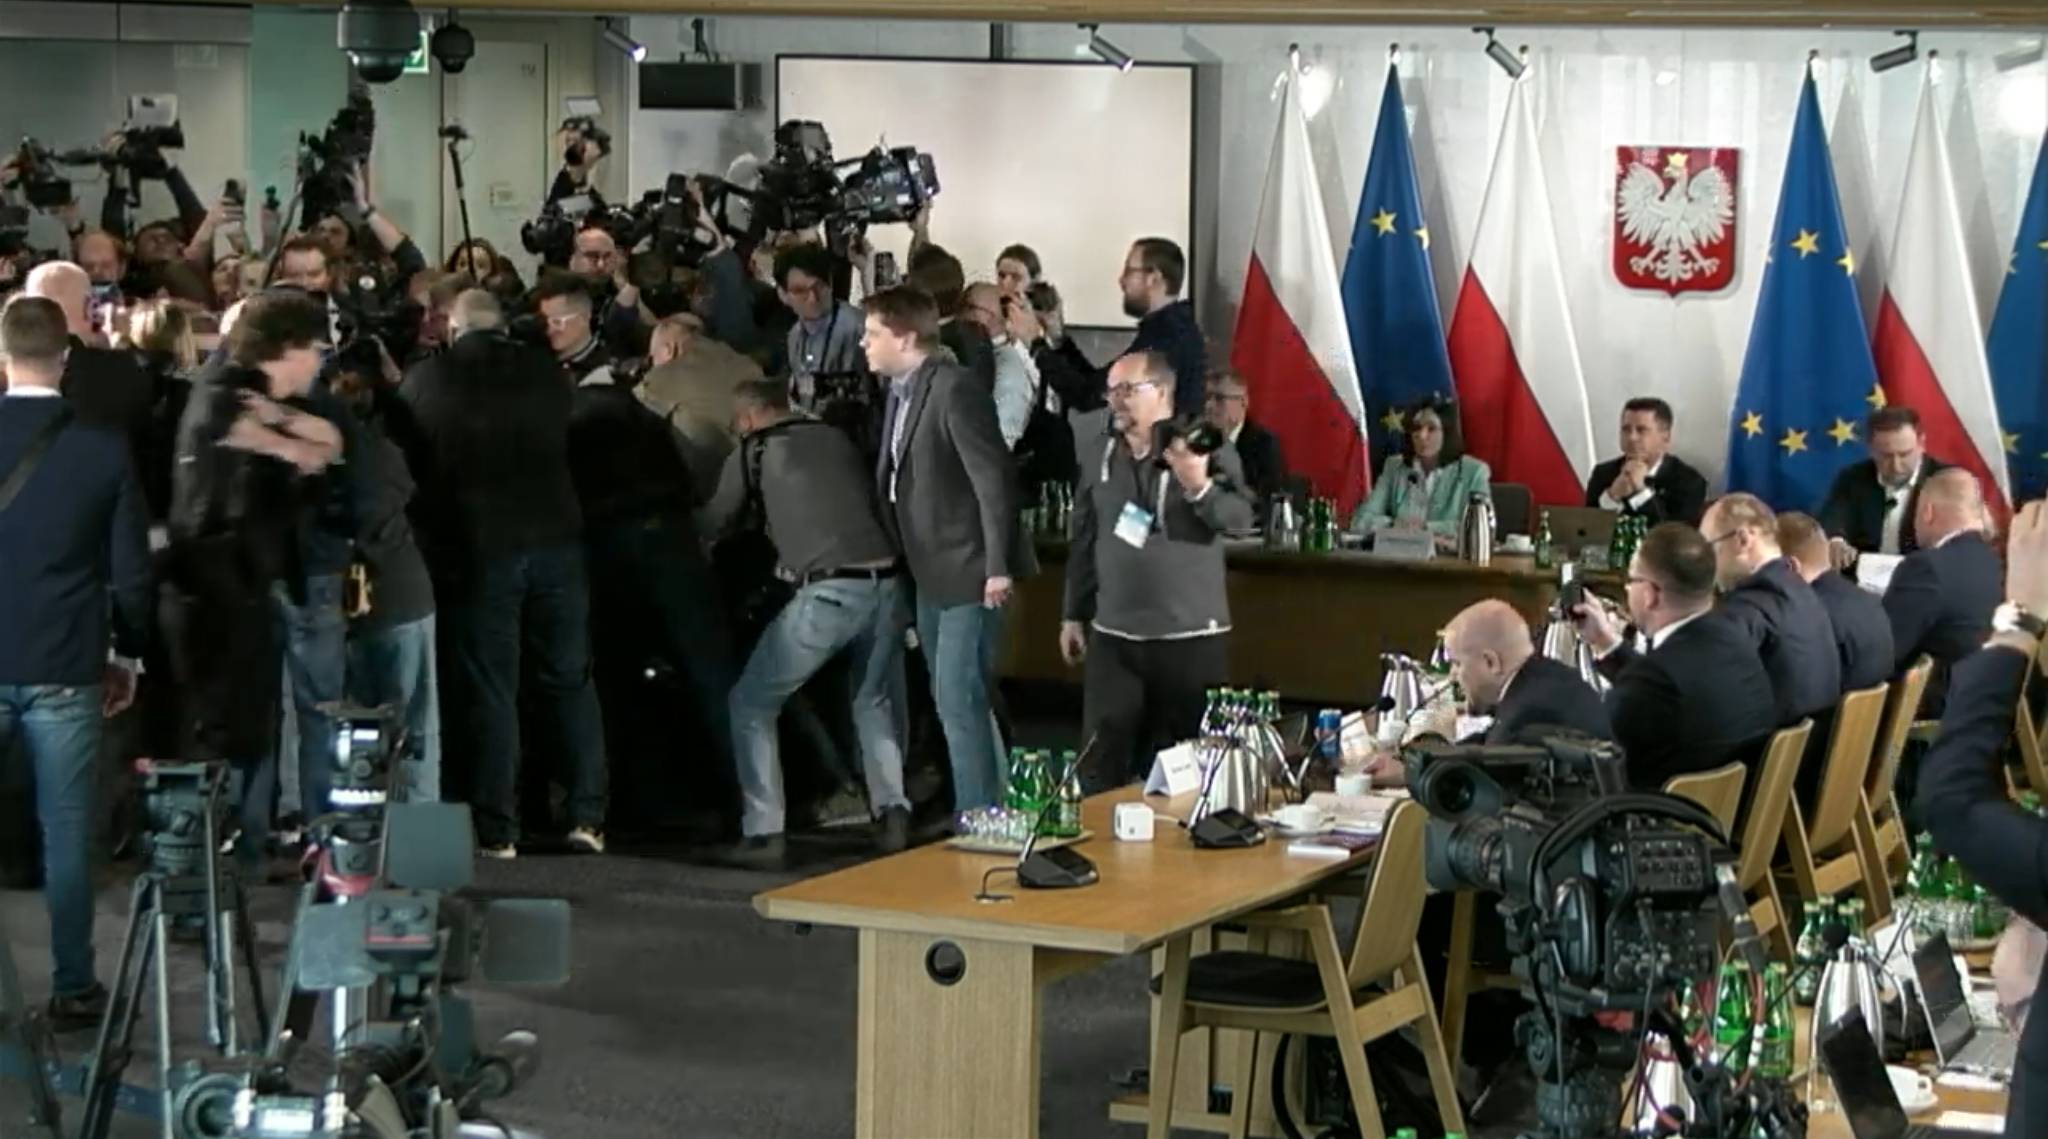 Tlum dziennikarzy otacza niewidocznego Jarosława Kaczyńskieg, przewodnicząca próbuje zacząć obrady